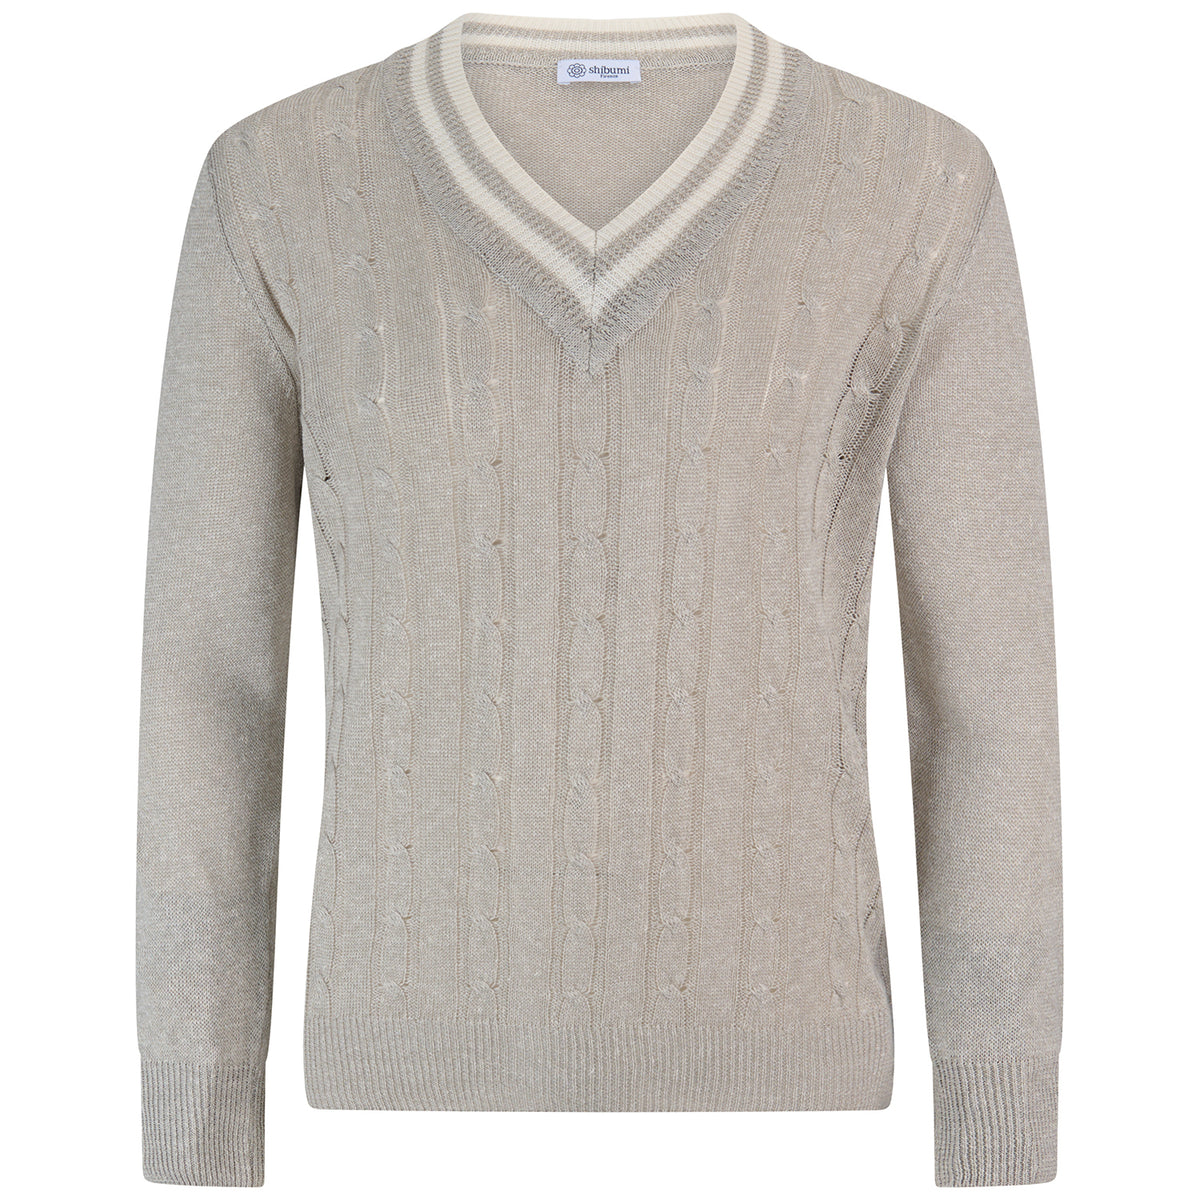 Linen / Cotton Cricket Sweater - Light Grey